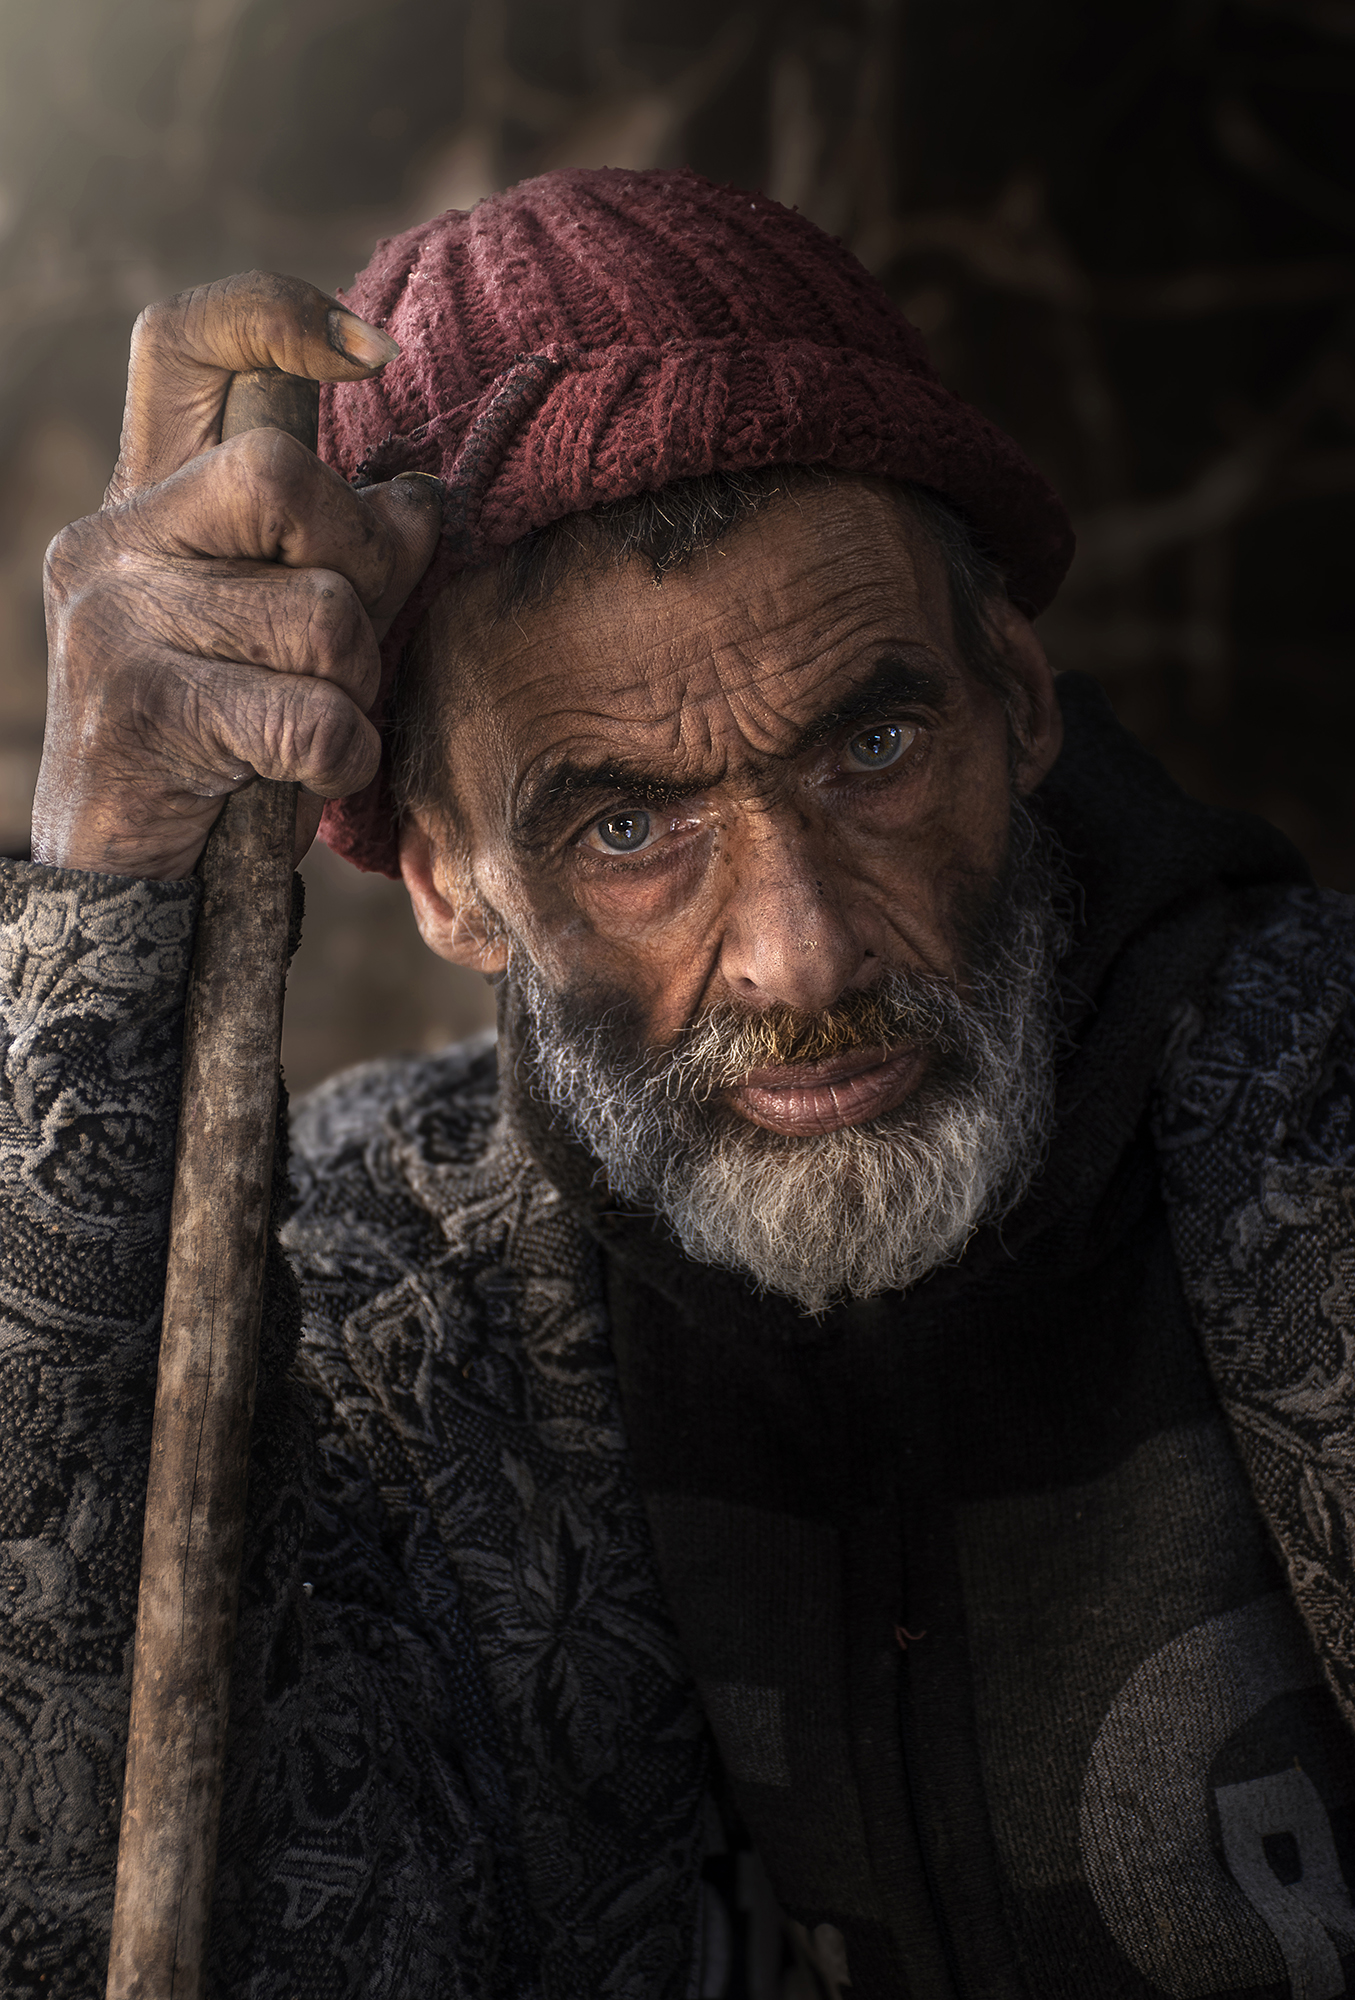 #people 3portrait #hat #beard #face #eye , Mehdi Zavvar